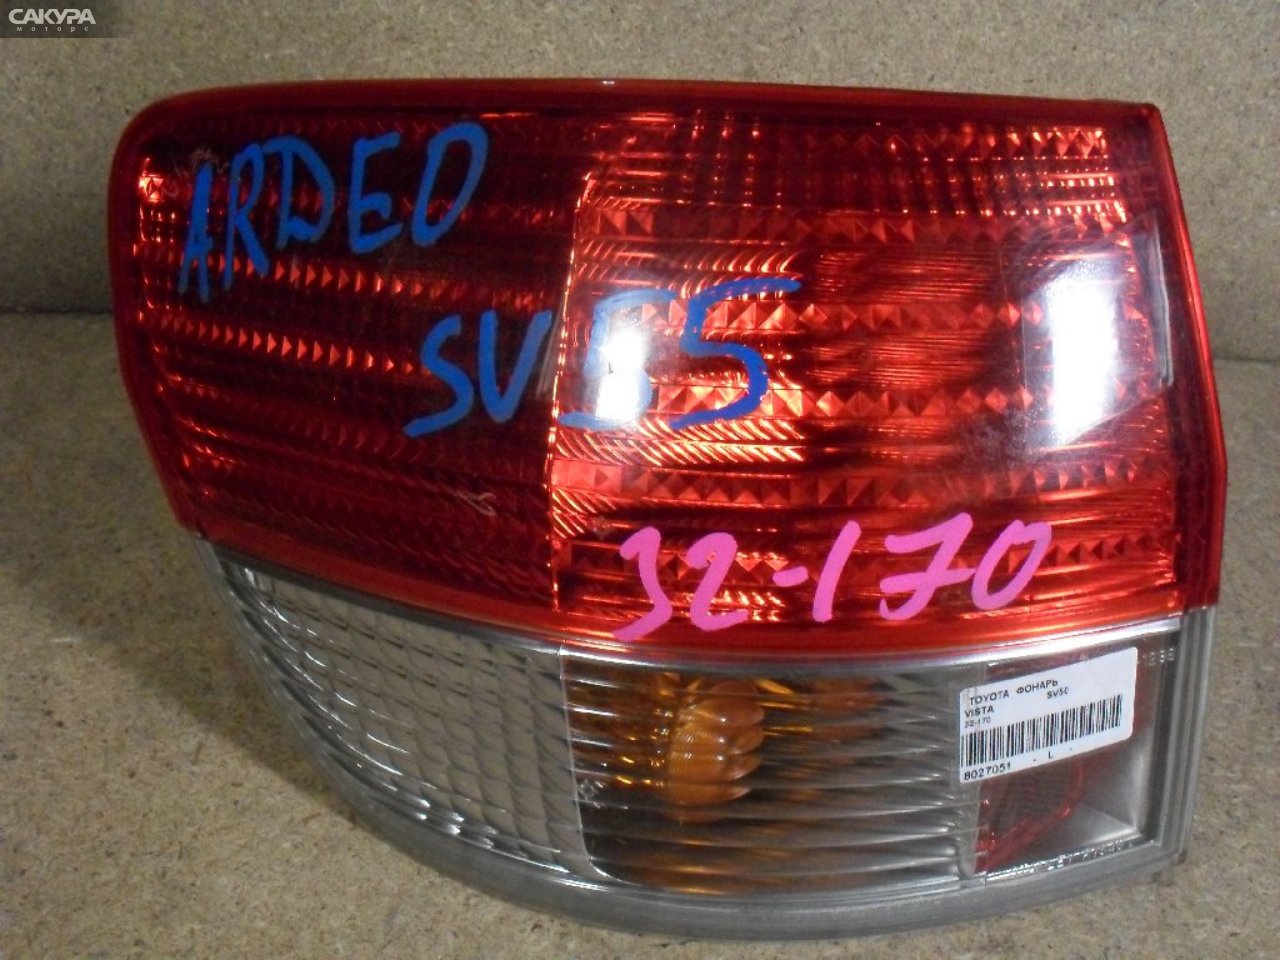 Фонарь стоп-сигнала левый Toyota Vista SV50 32-170: купить в Сакура Абакан.